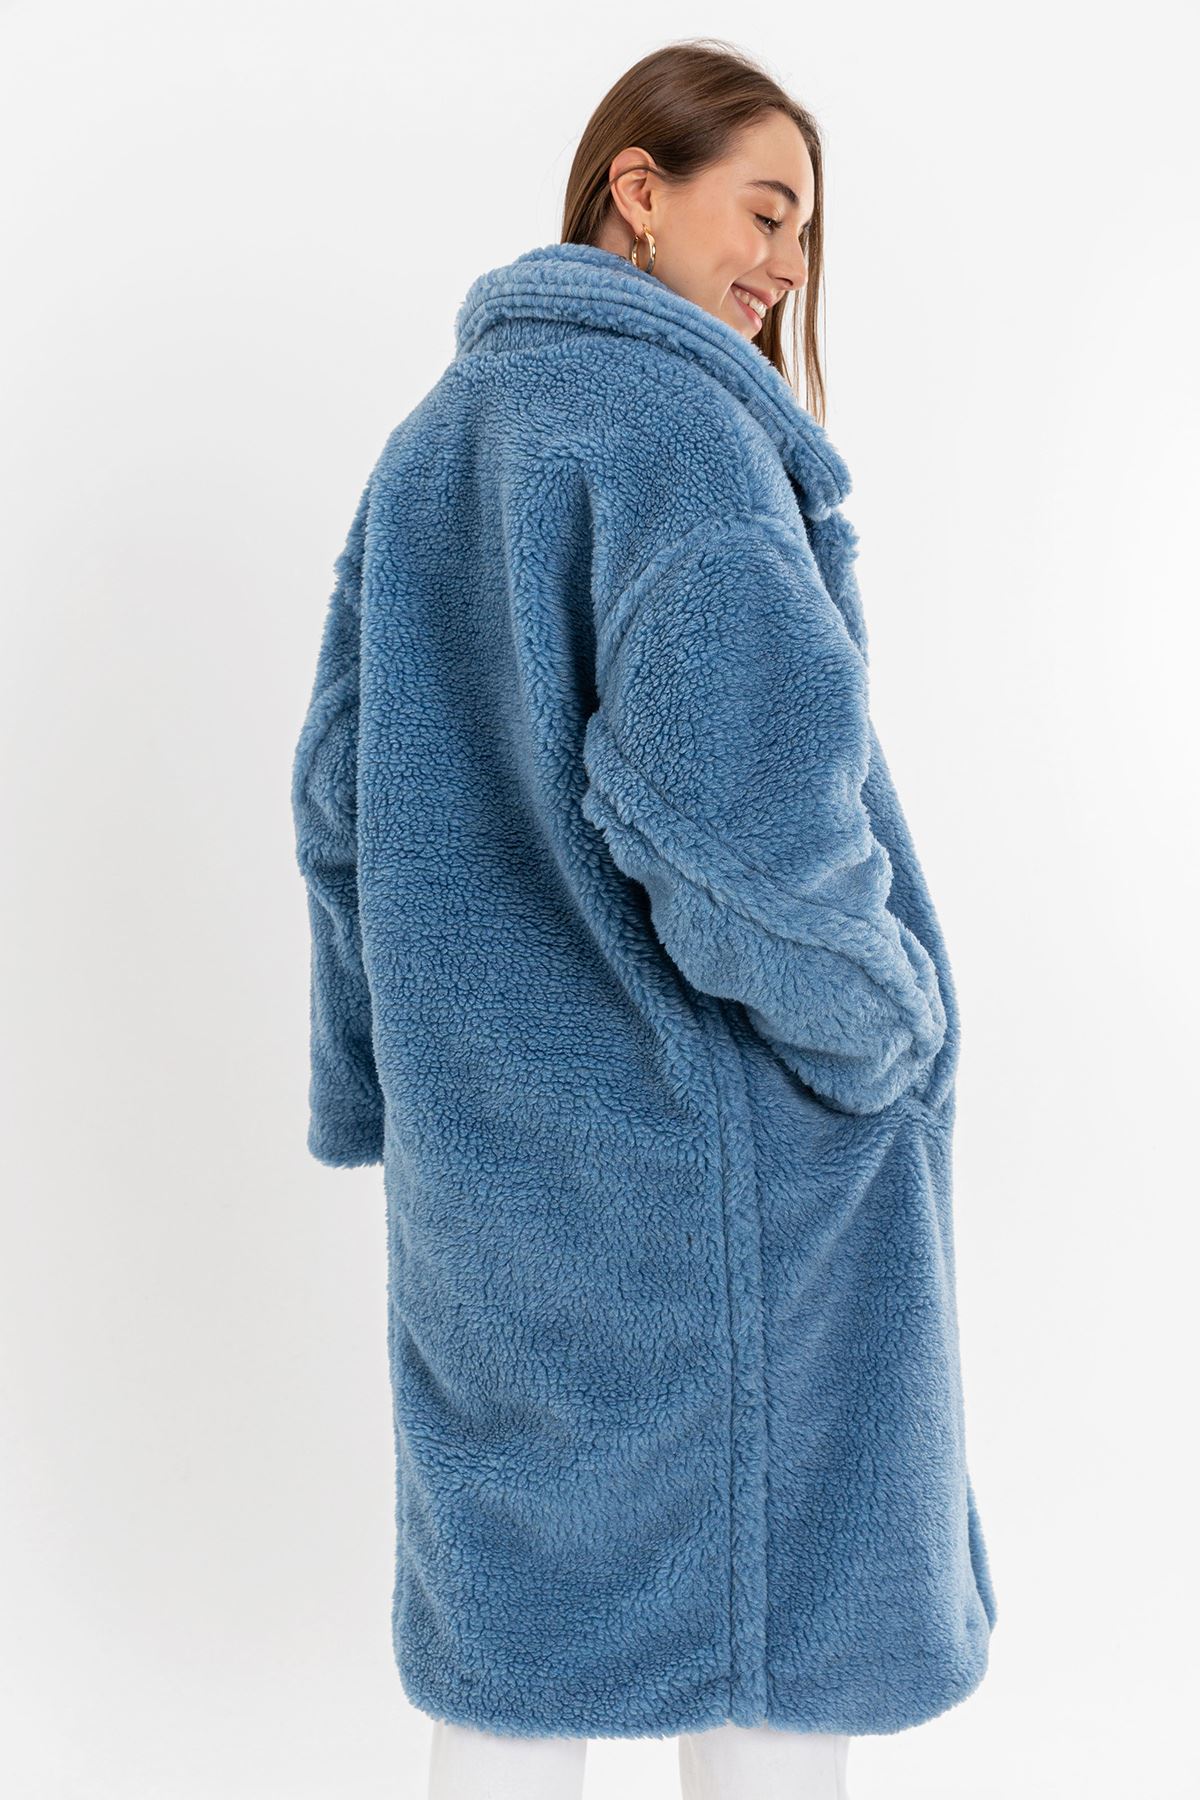 Teddy Kumaş Ceket Yaka Diz Altı Boy Oversize/Salaş Kadın Kaban-Mavi